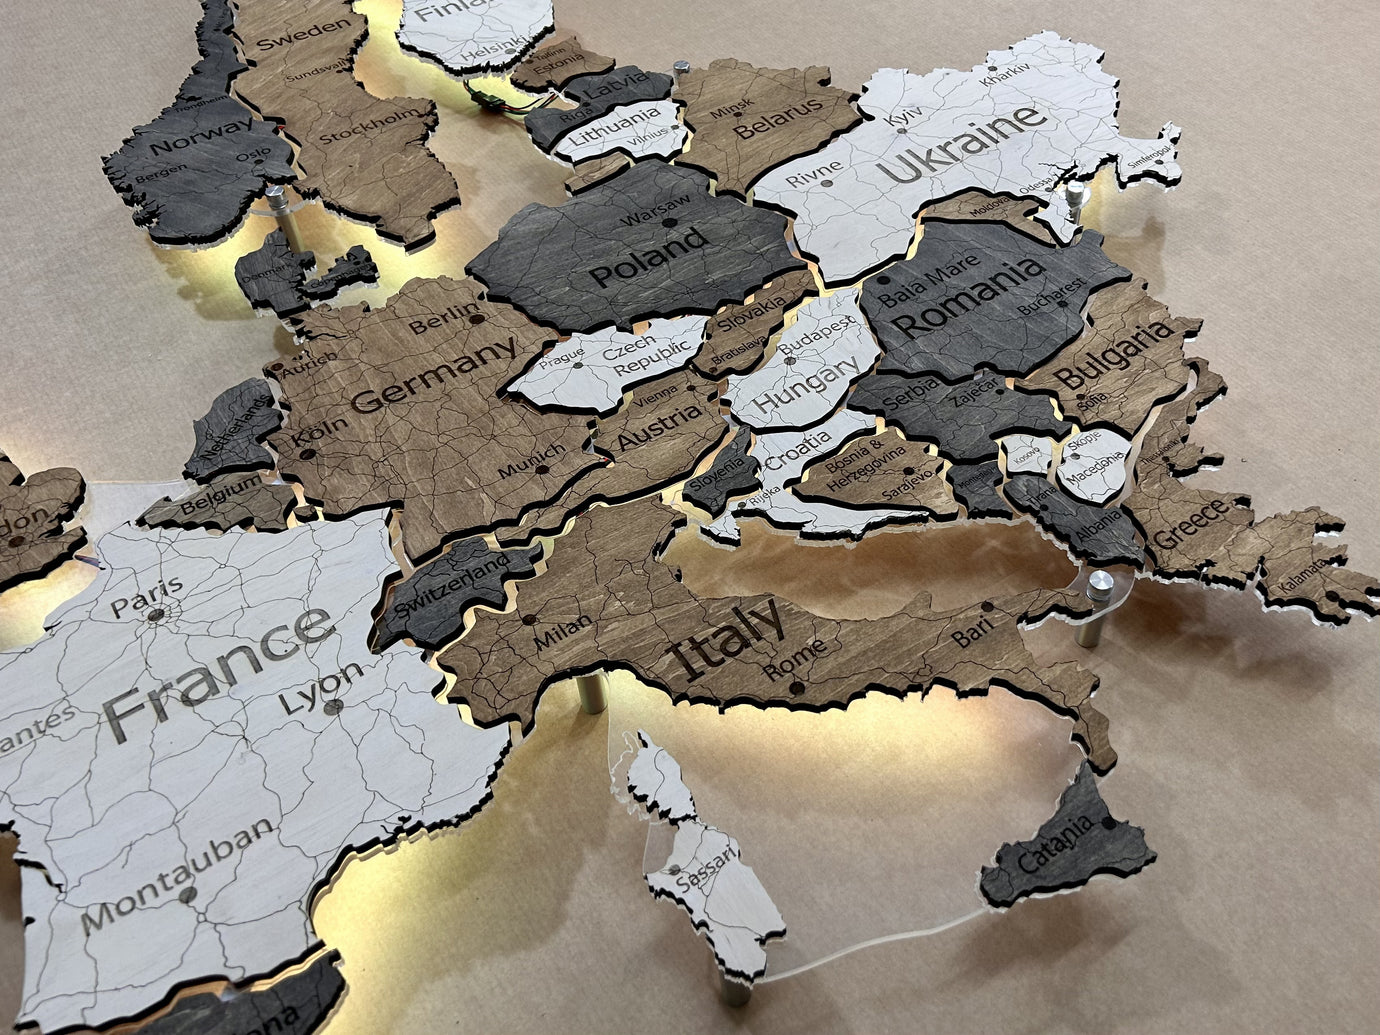 Deutschlandkarte auf Acrylglas mit LED-Licht zwischen den Regionen